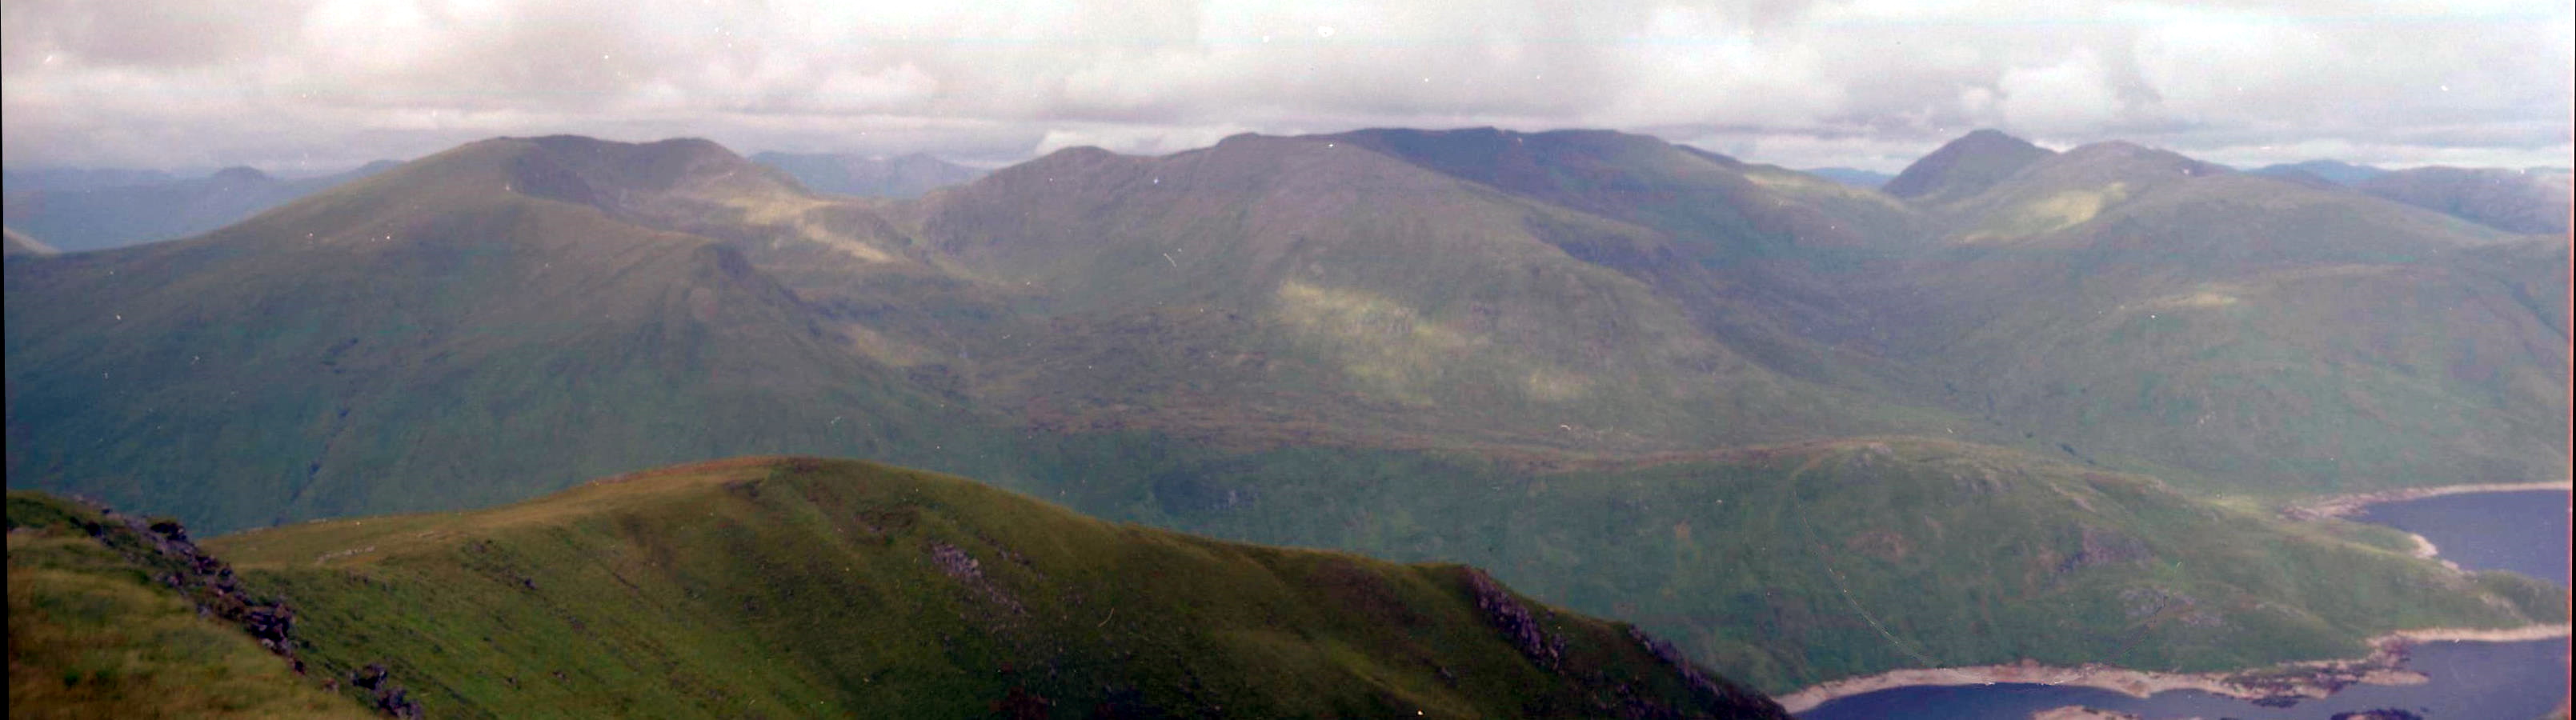 An Socath, An Riabhachan and Sgurr na Laipaich from Beinn Fhionnnlaidh above Loch Mullardoch